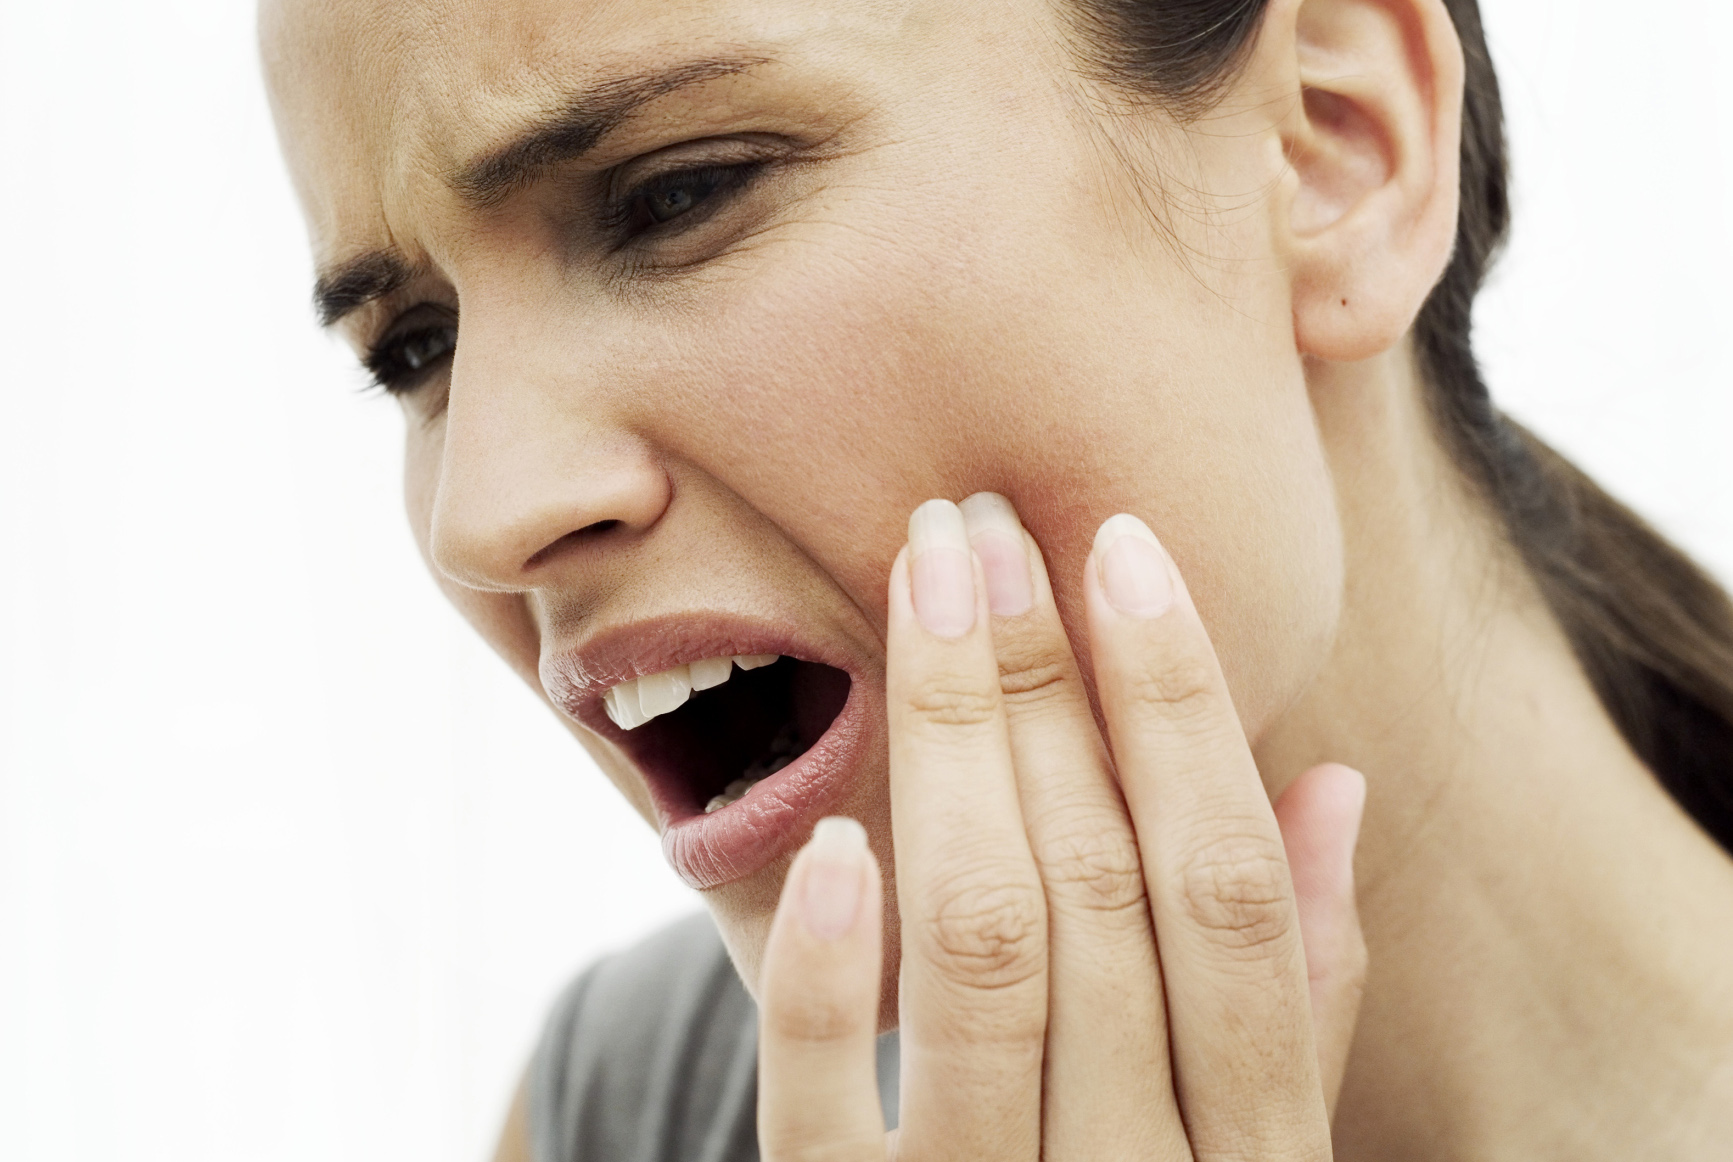   Bệnh nha chu có thể gây chảy máu chân răng  